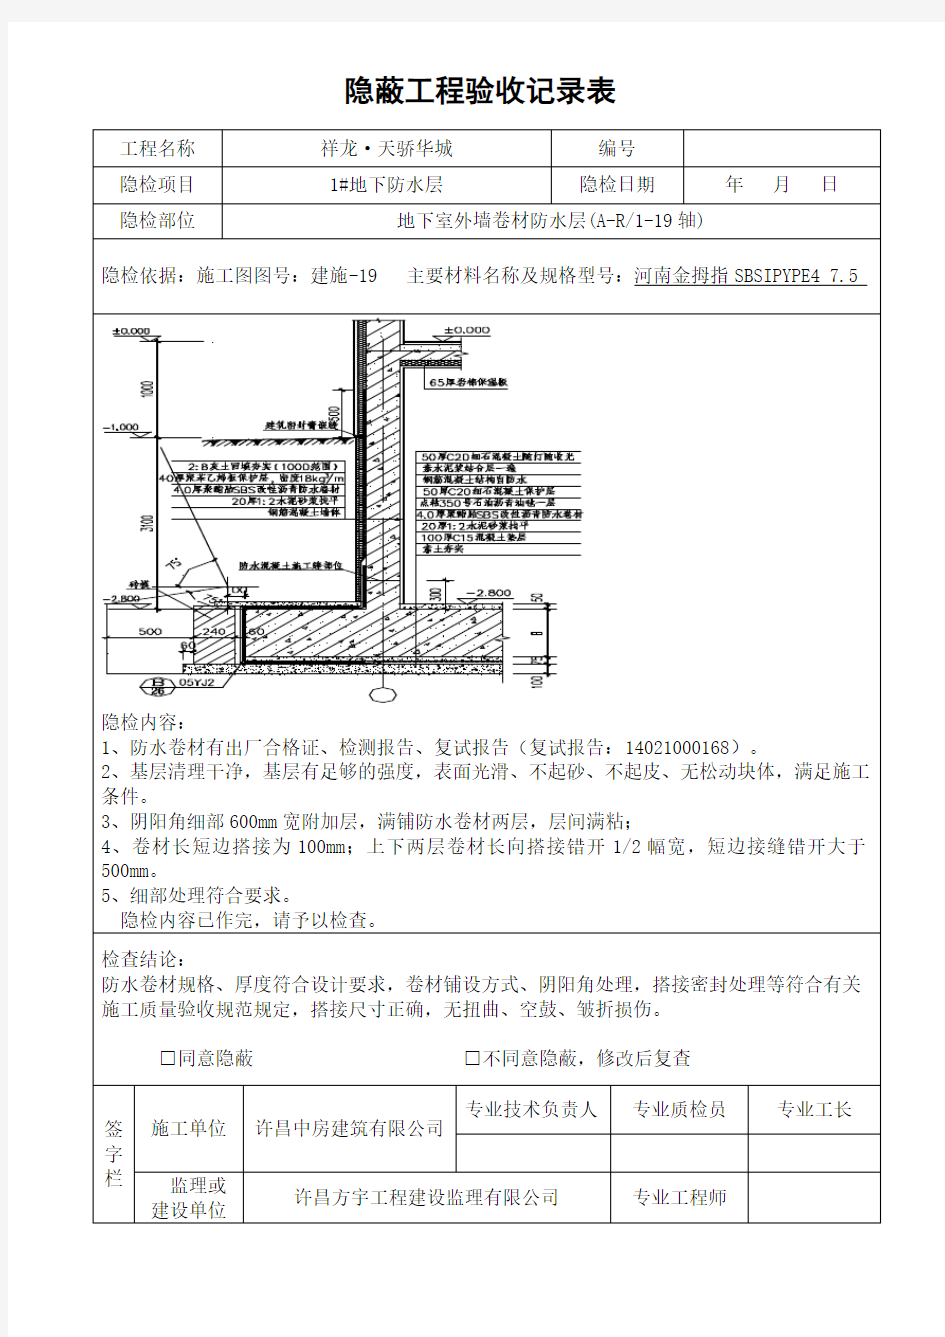 地下室防水工程隐蔽工程验收记录表(完整版)